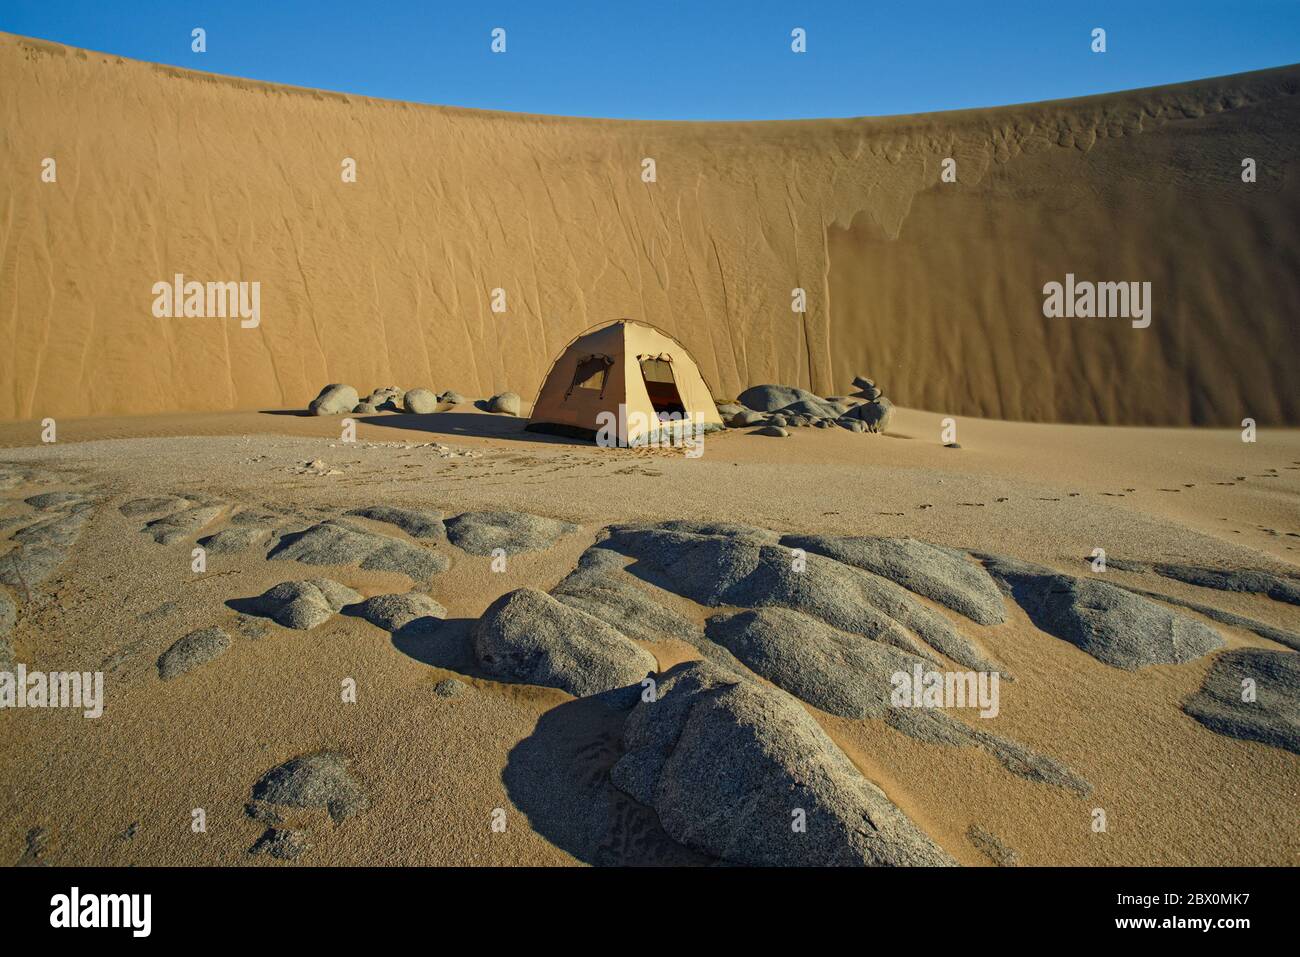 Camping dans la lee d'une immense dune de sable. Safari dans le désert en 4x4 sur la côte des squelettes de Namibie, en Afrique du Sud-Ouest. Banque D'Images